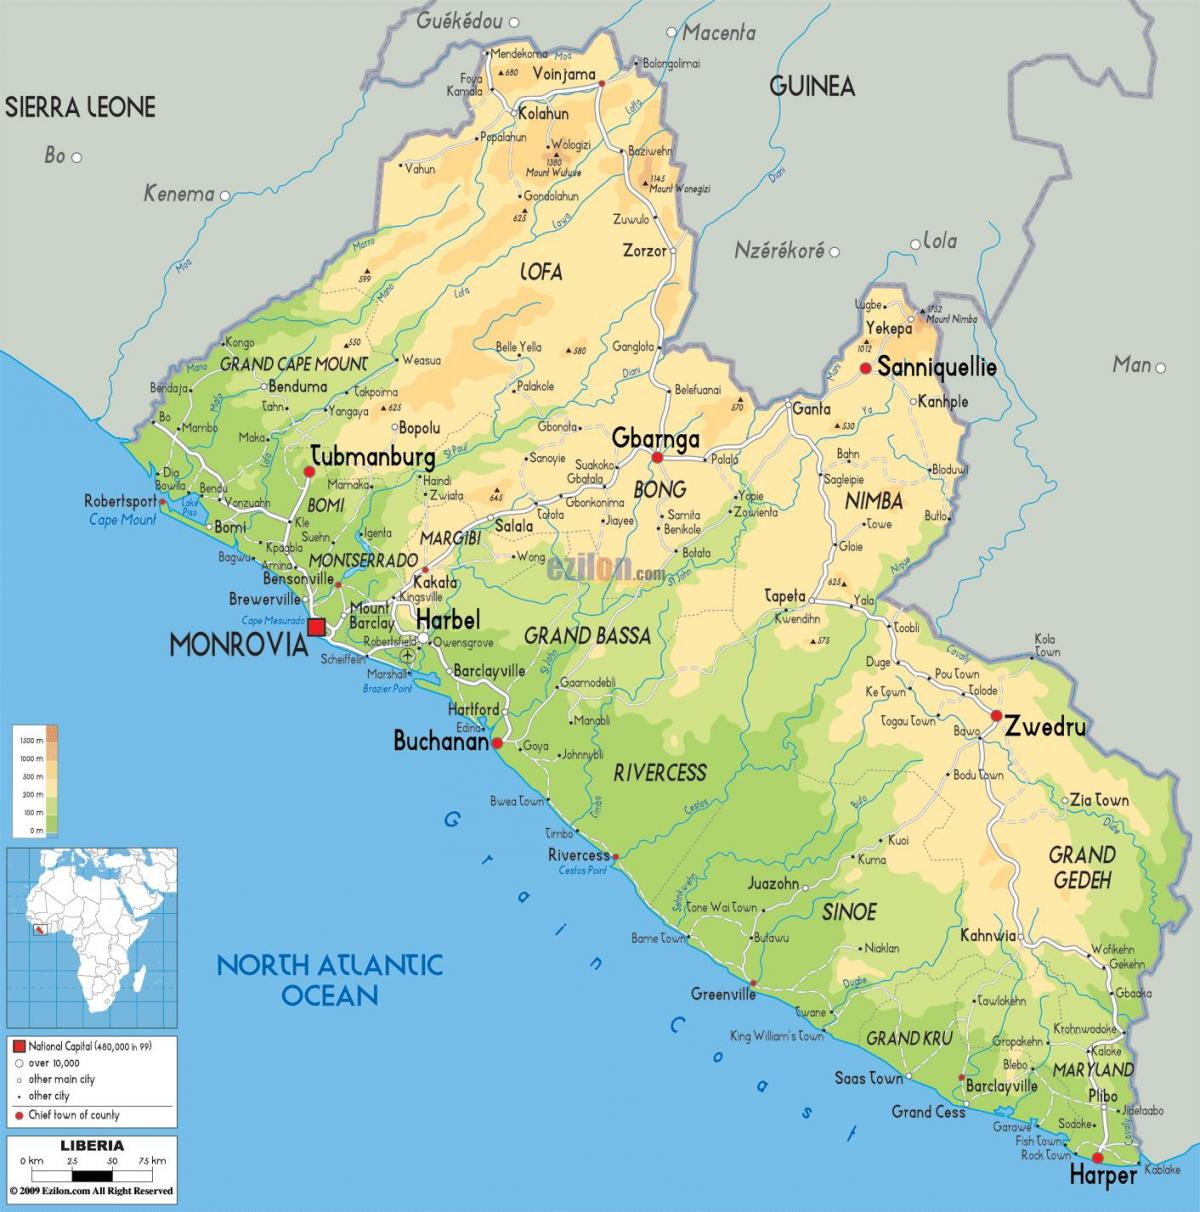 trase kat jeyografik la nan Liberya